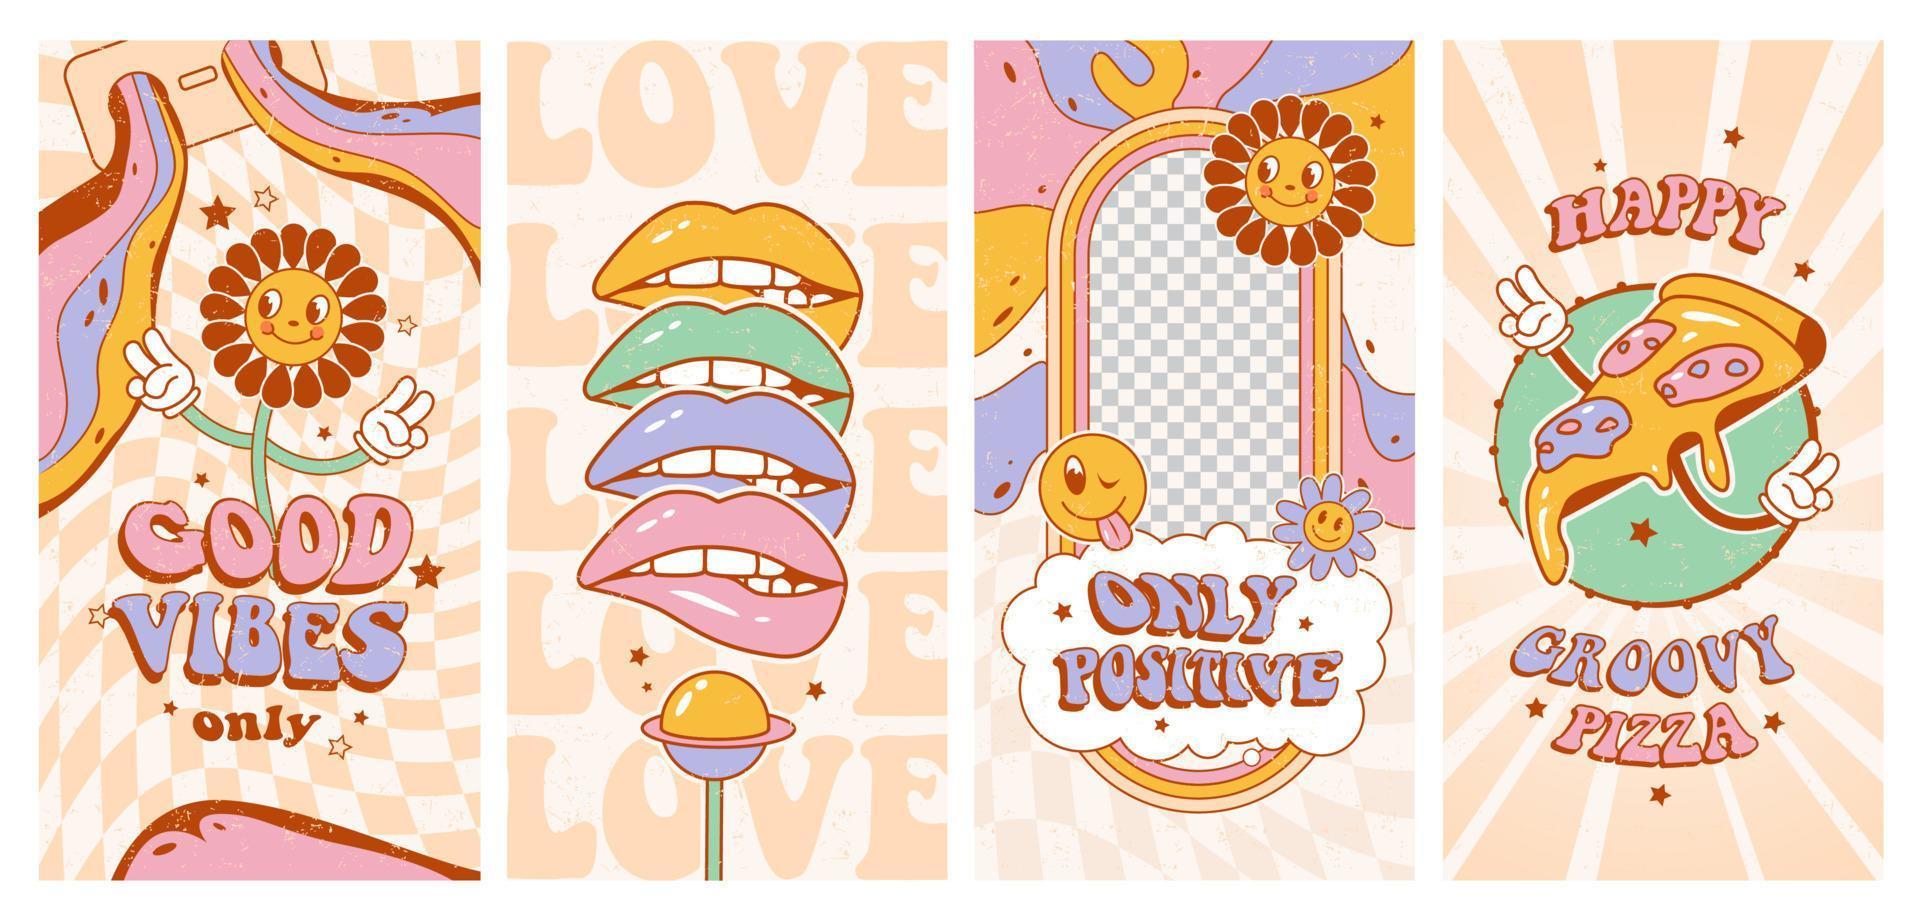 ensemble d'affiches groovy hippie des années 70. ondes positives. fleurs drôles, pizza, lèvres, amour dans un style de dessin animé psychédélique rétro à la mode. vecteur